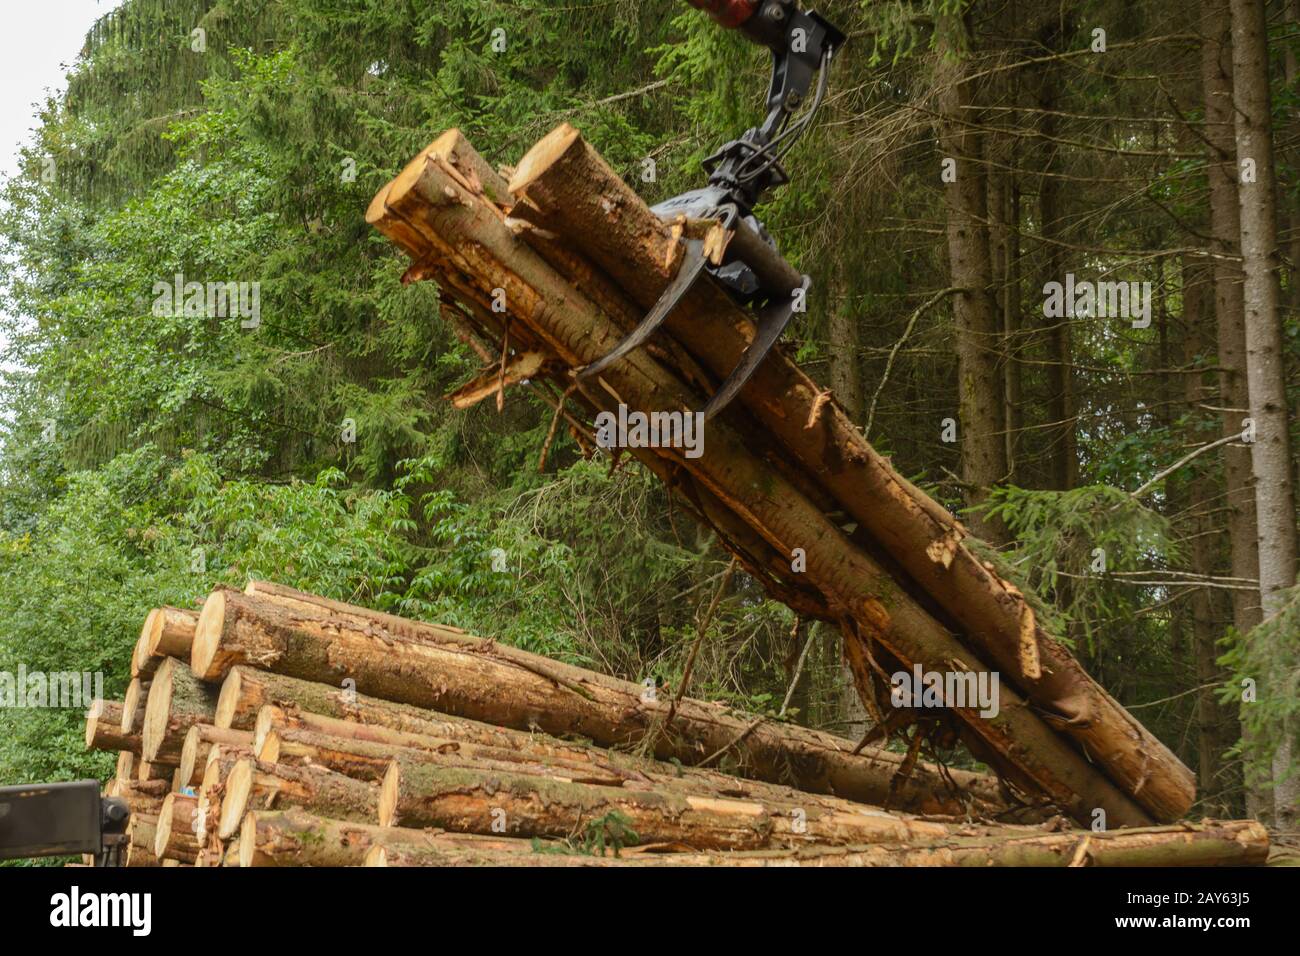 Holzstämme mit einem Kran auf einen Holztransporter laden - Forsten Stockfoto